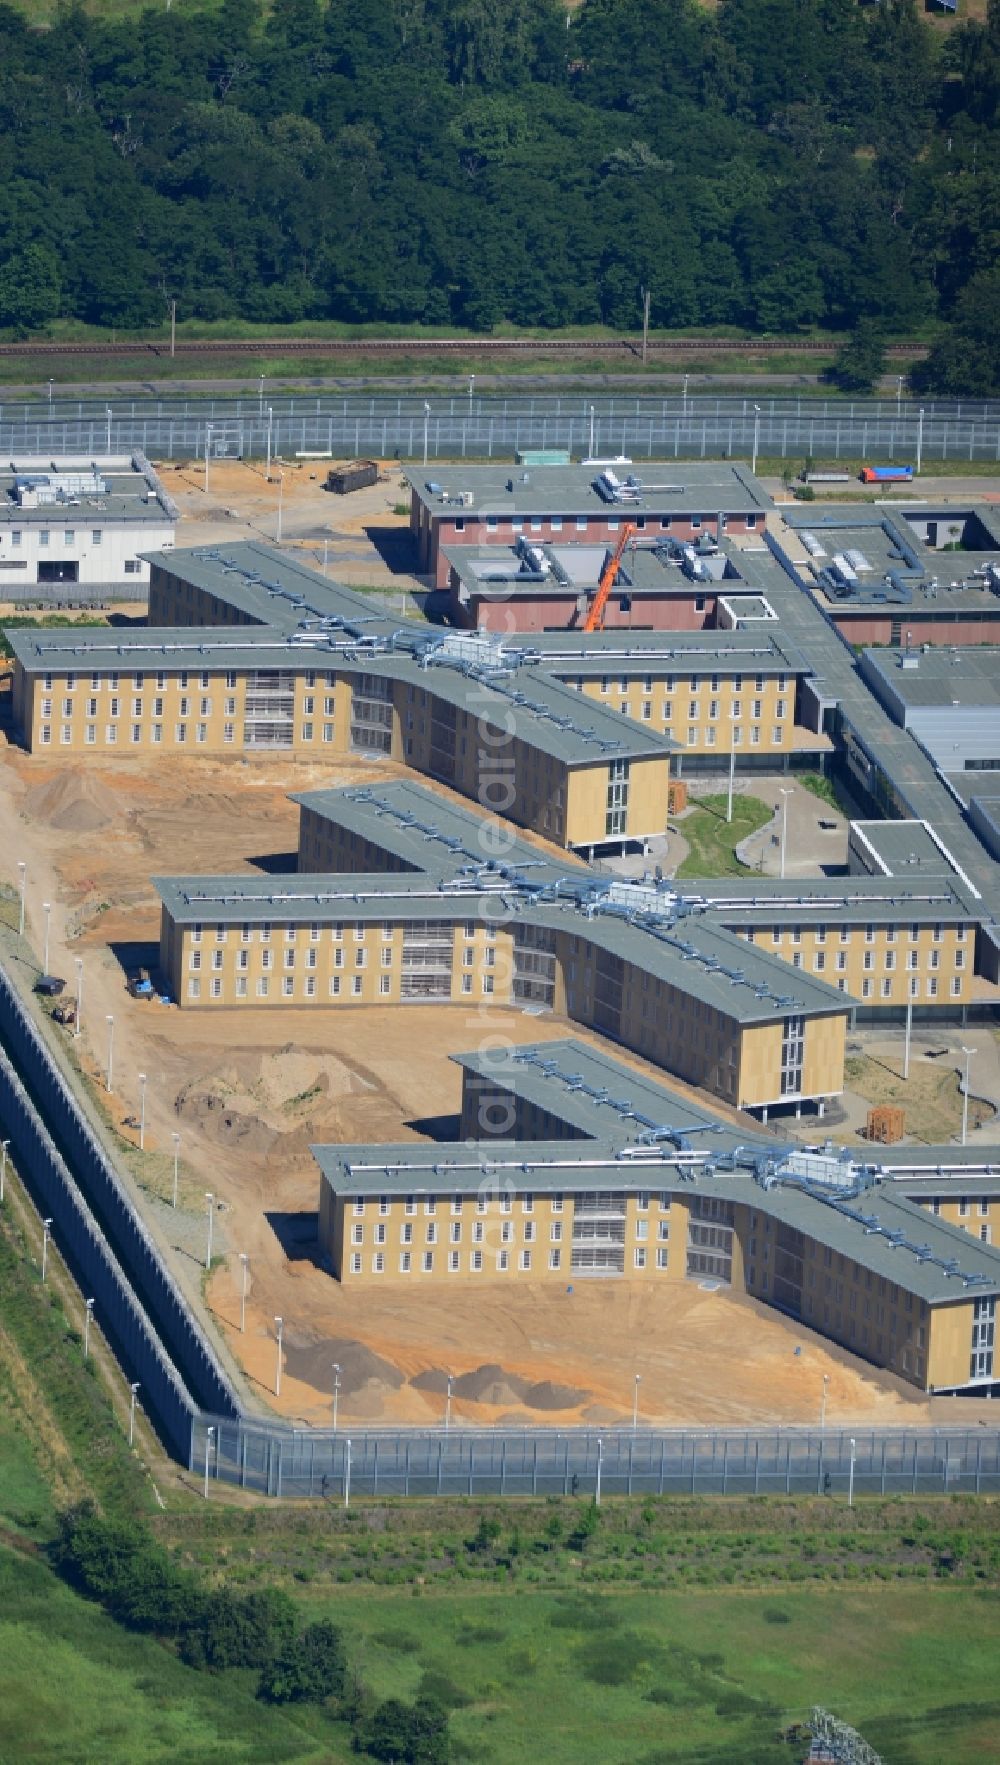 Großbeeren from above - Construction site of the new penal institution Heidering Grossbeeren